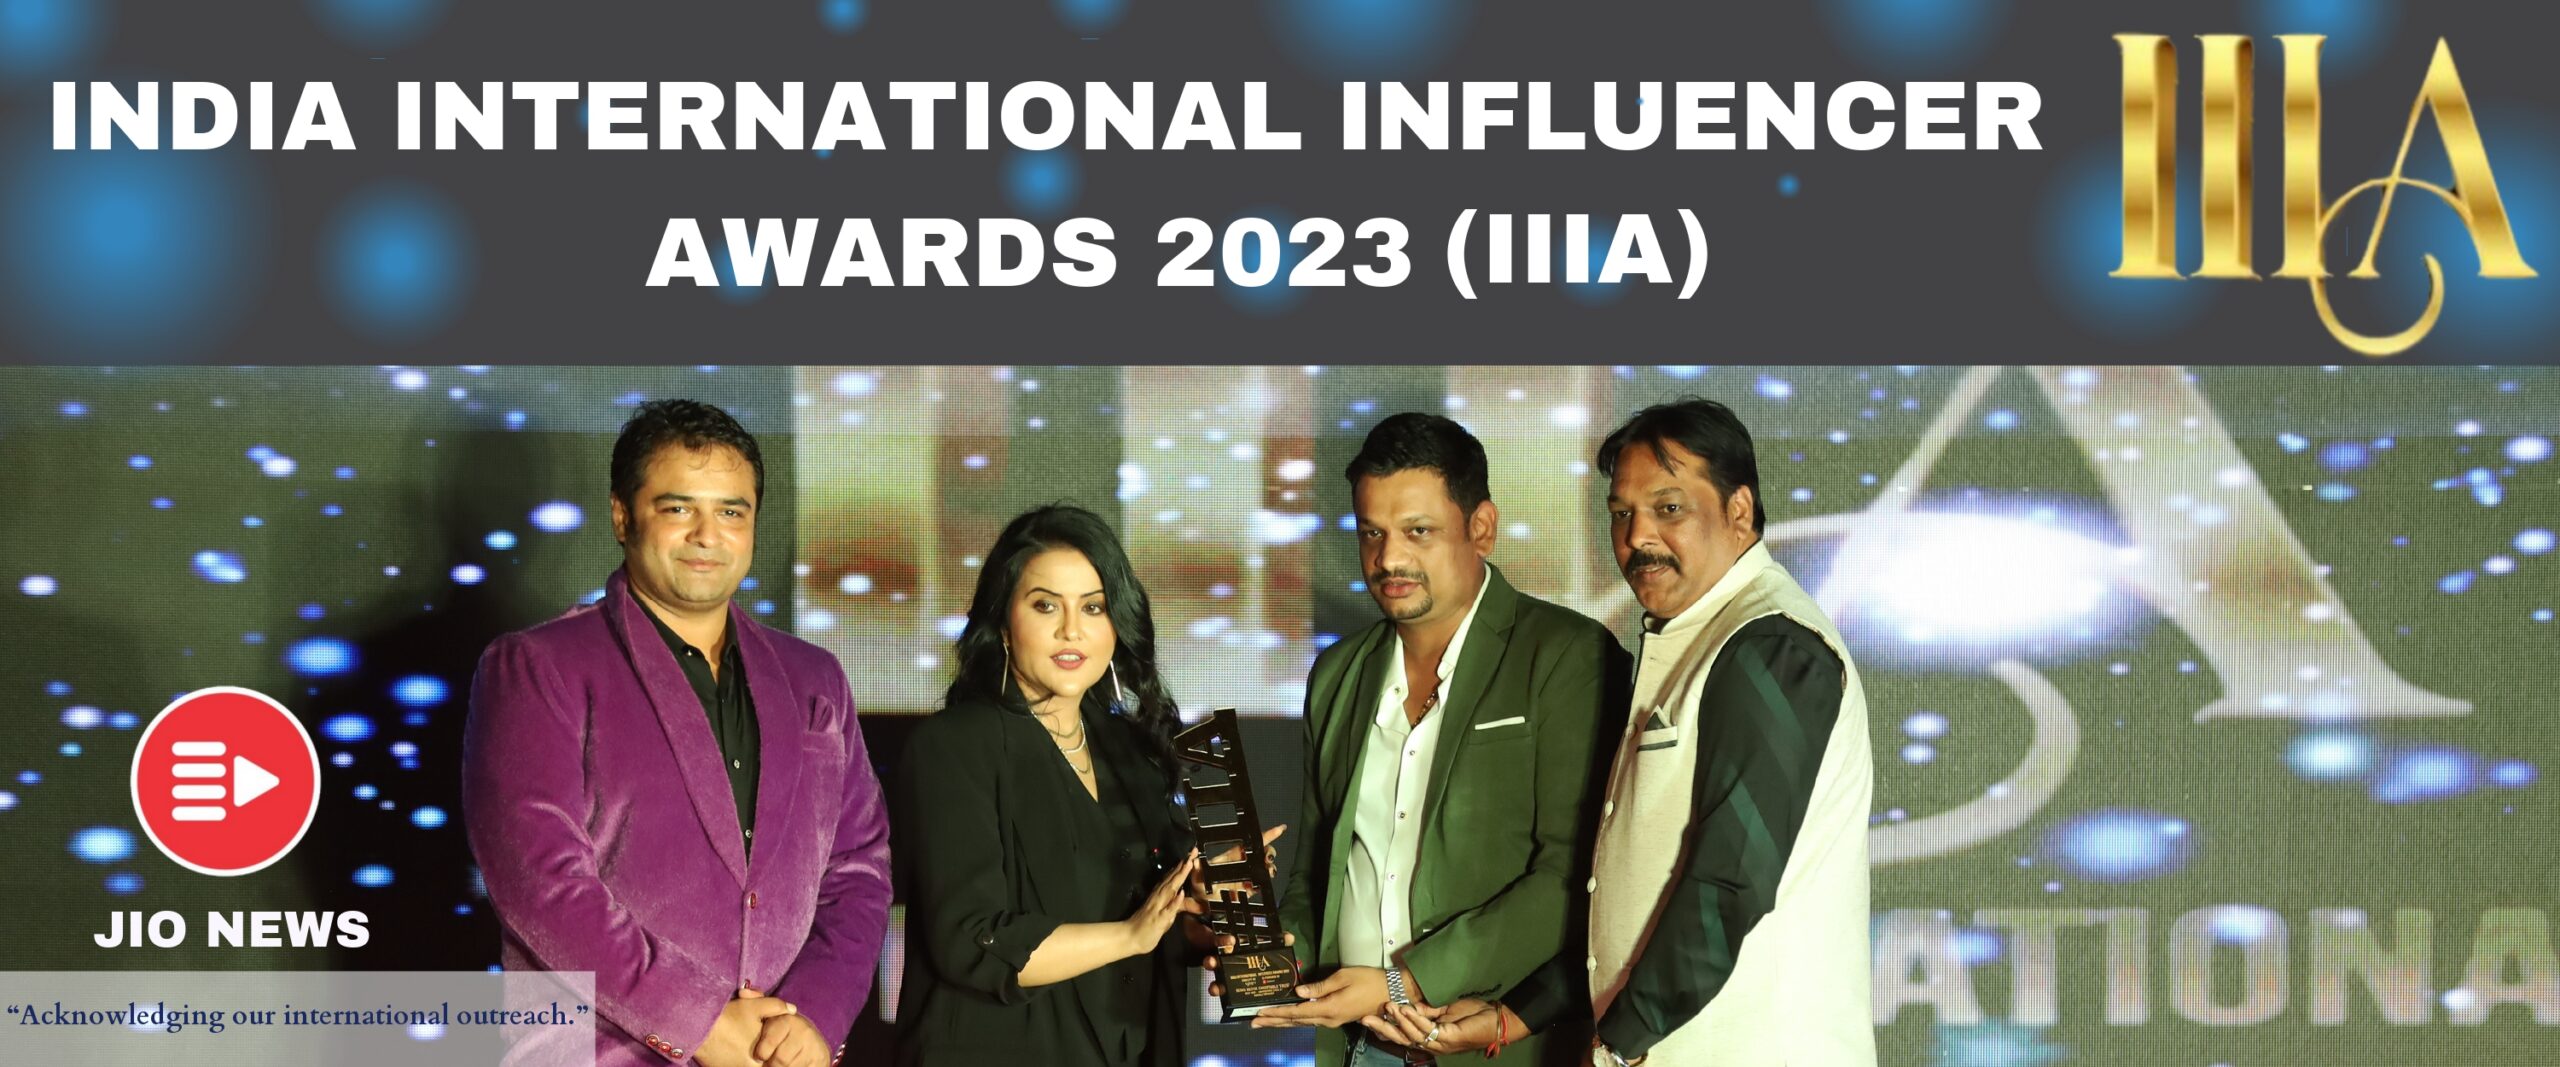 INDIA INTERNATIONAL INFLUENCER AWARDS 2023 (IIIA)